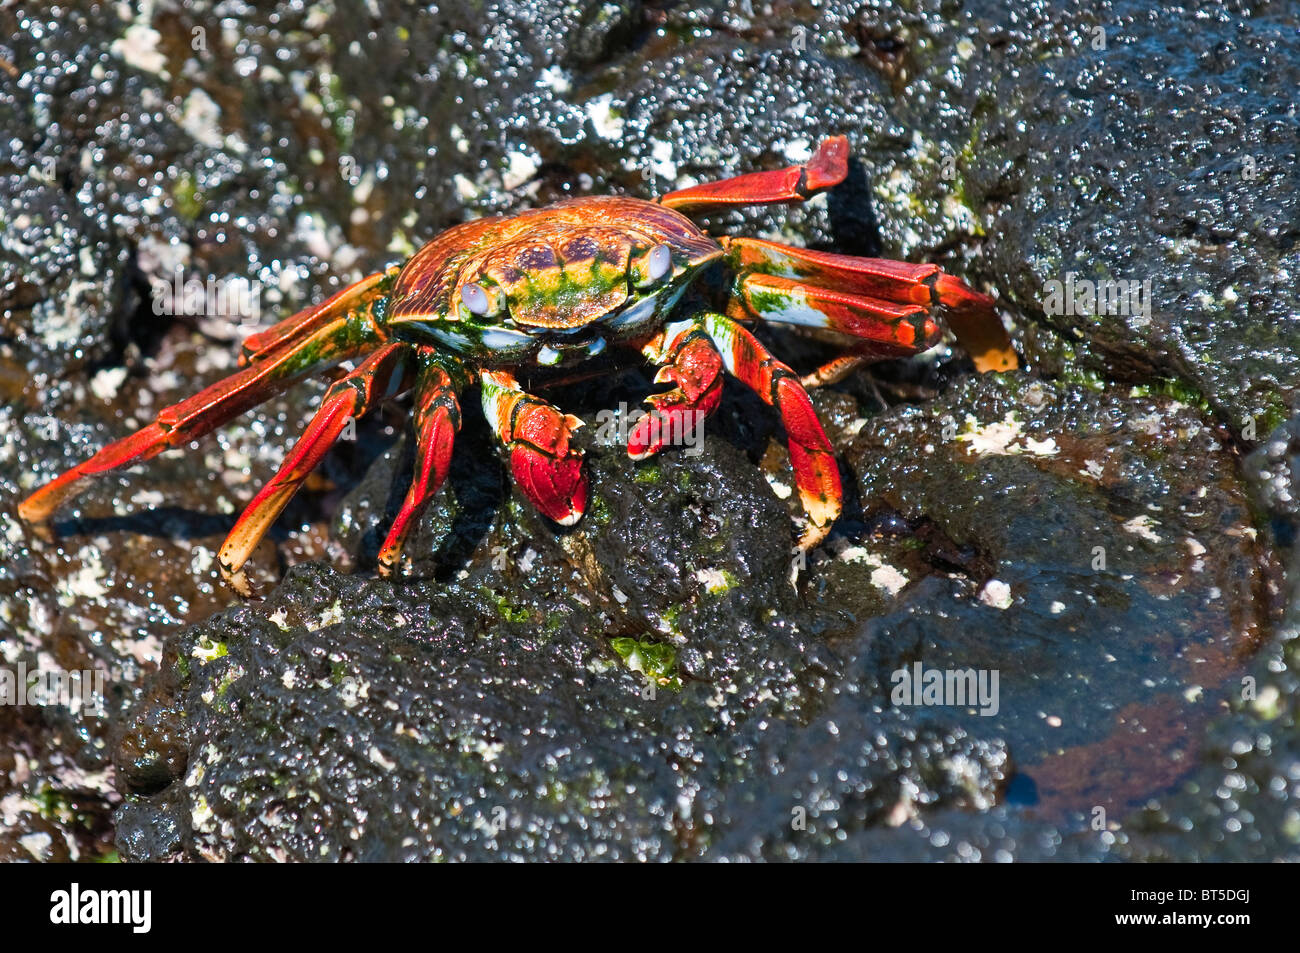 Îles Galapagos, en Équateur. Sally Lightfoot crab (Grapsus grapsus), Port Egas (baie James) Isla Santiago (île de Santiago). Banque D'Images